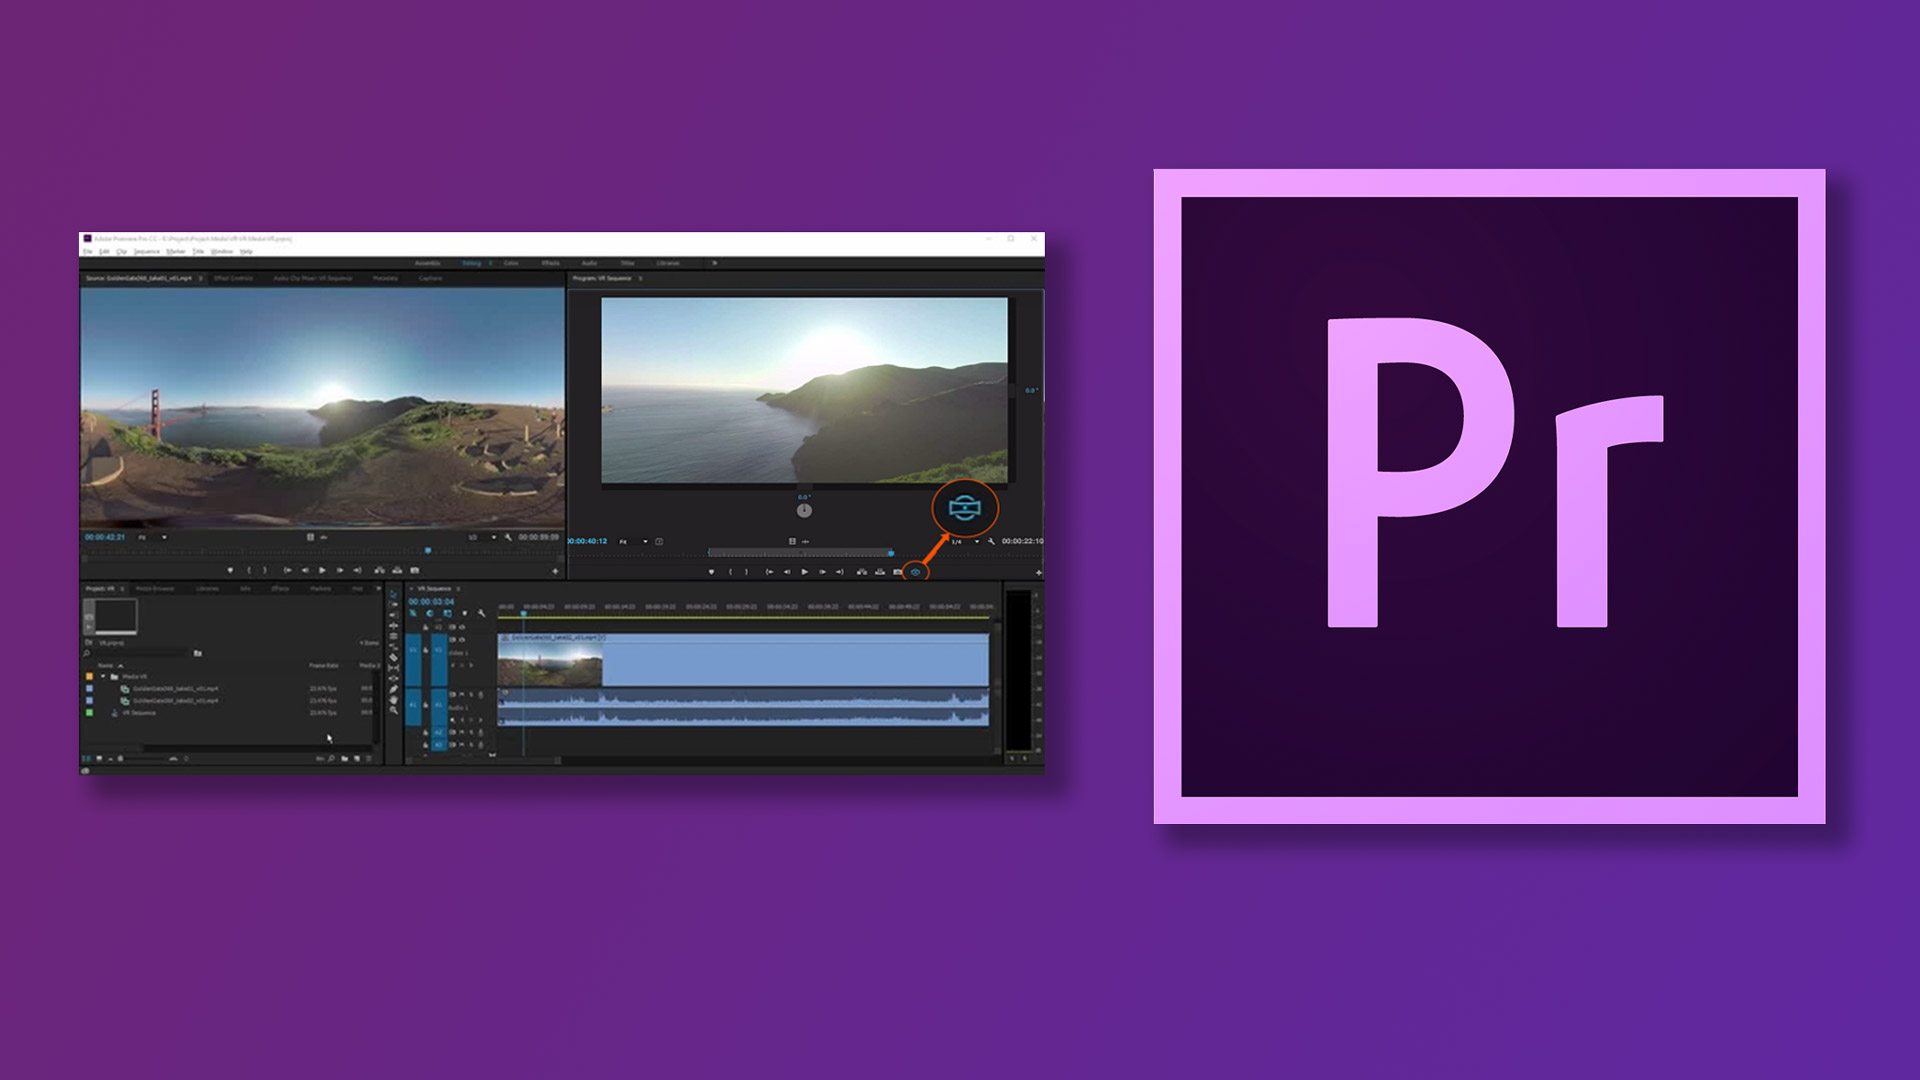 پریمیر چیست: بررسی تخصصی نرم افزار Adobe premiere